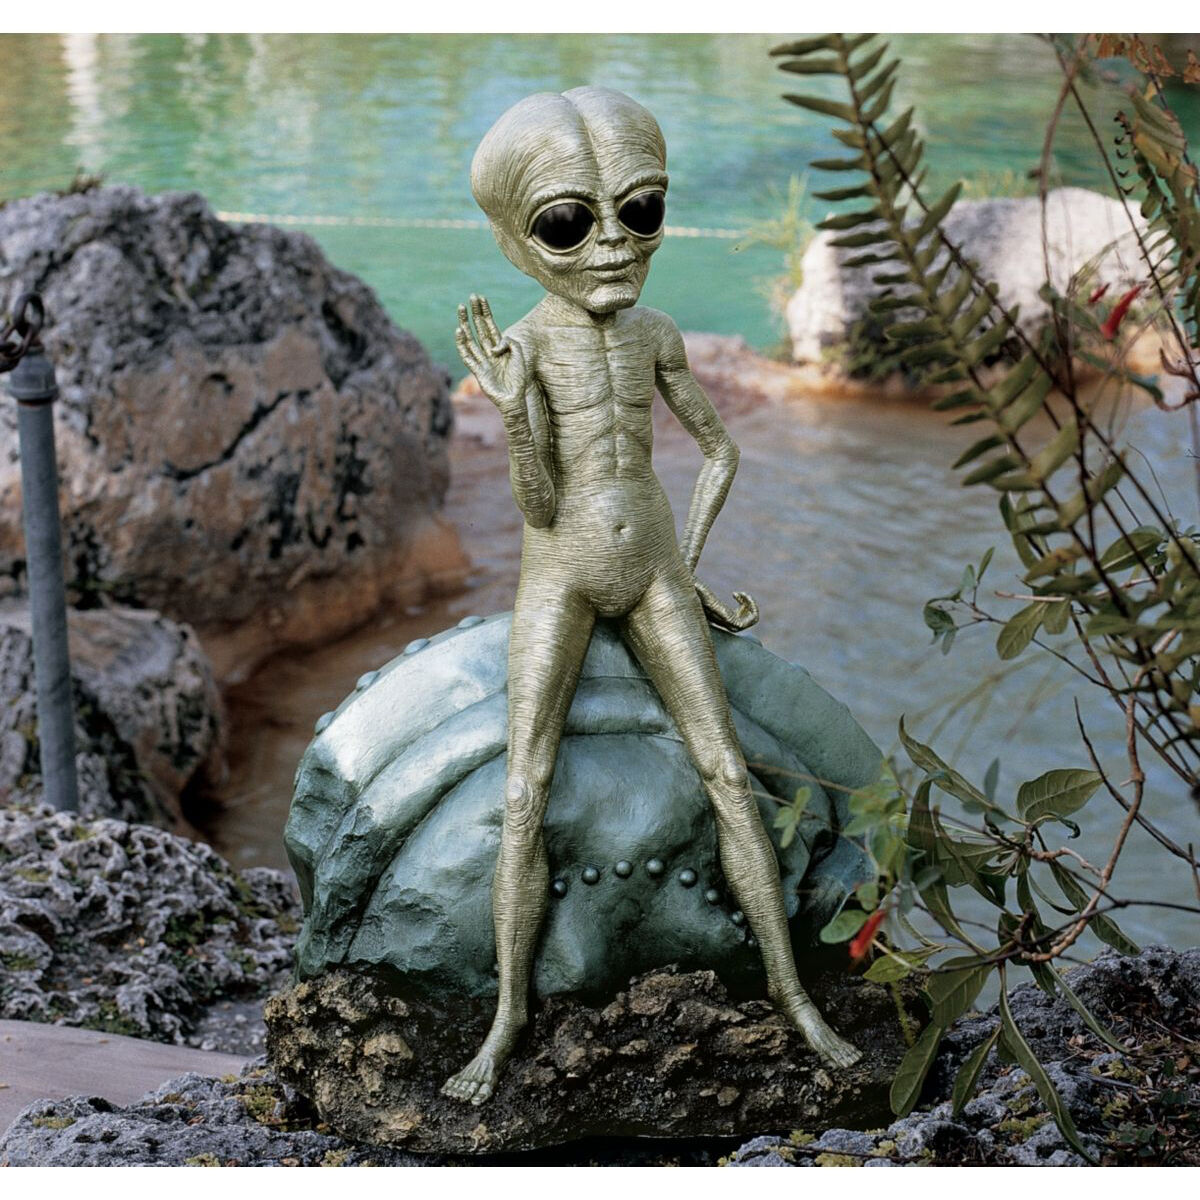 UFO Extra-Terrestrial Flying Saucer Crashed Spacecraft Standing Alien Sculpture